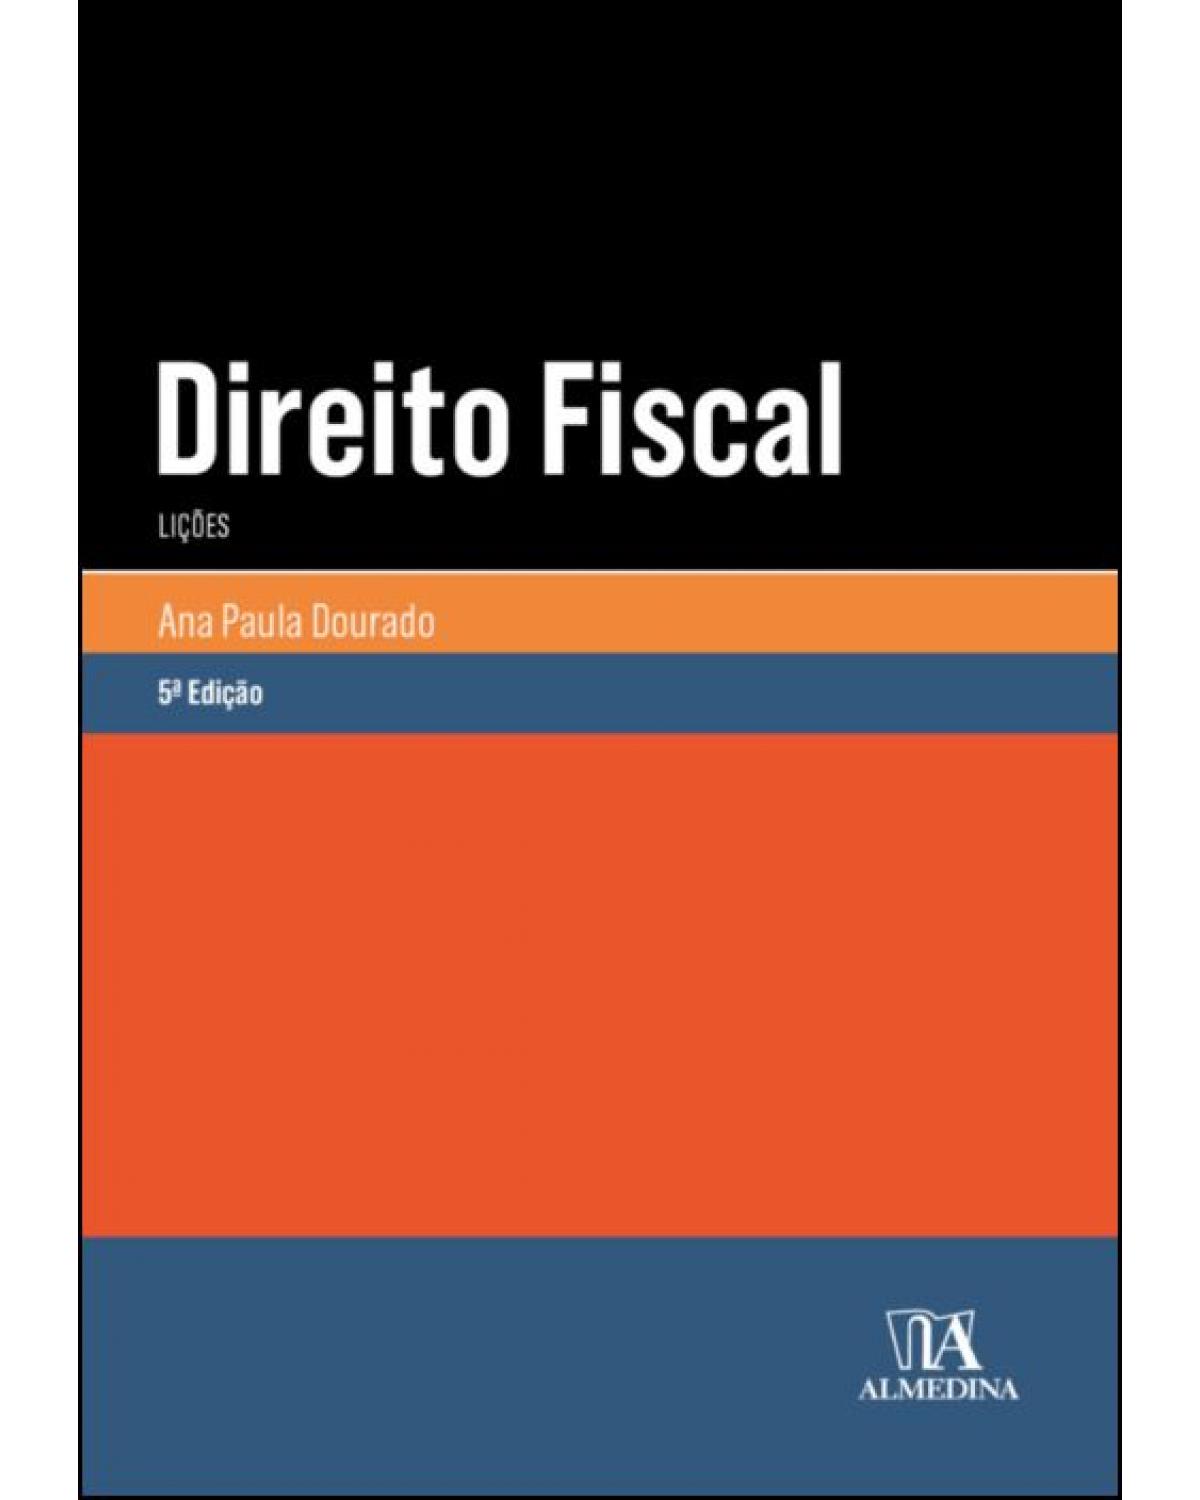 Direito fiscal - Lições - 5ª Edição | 2021